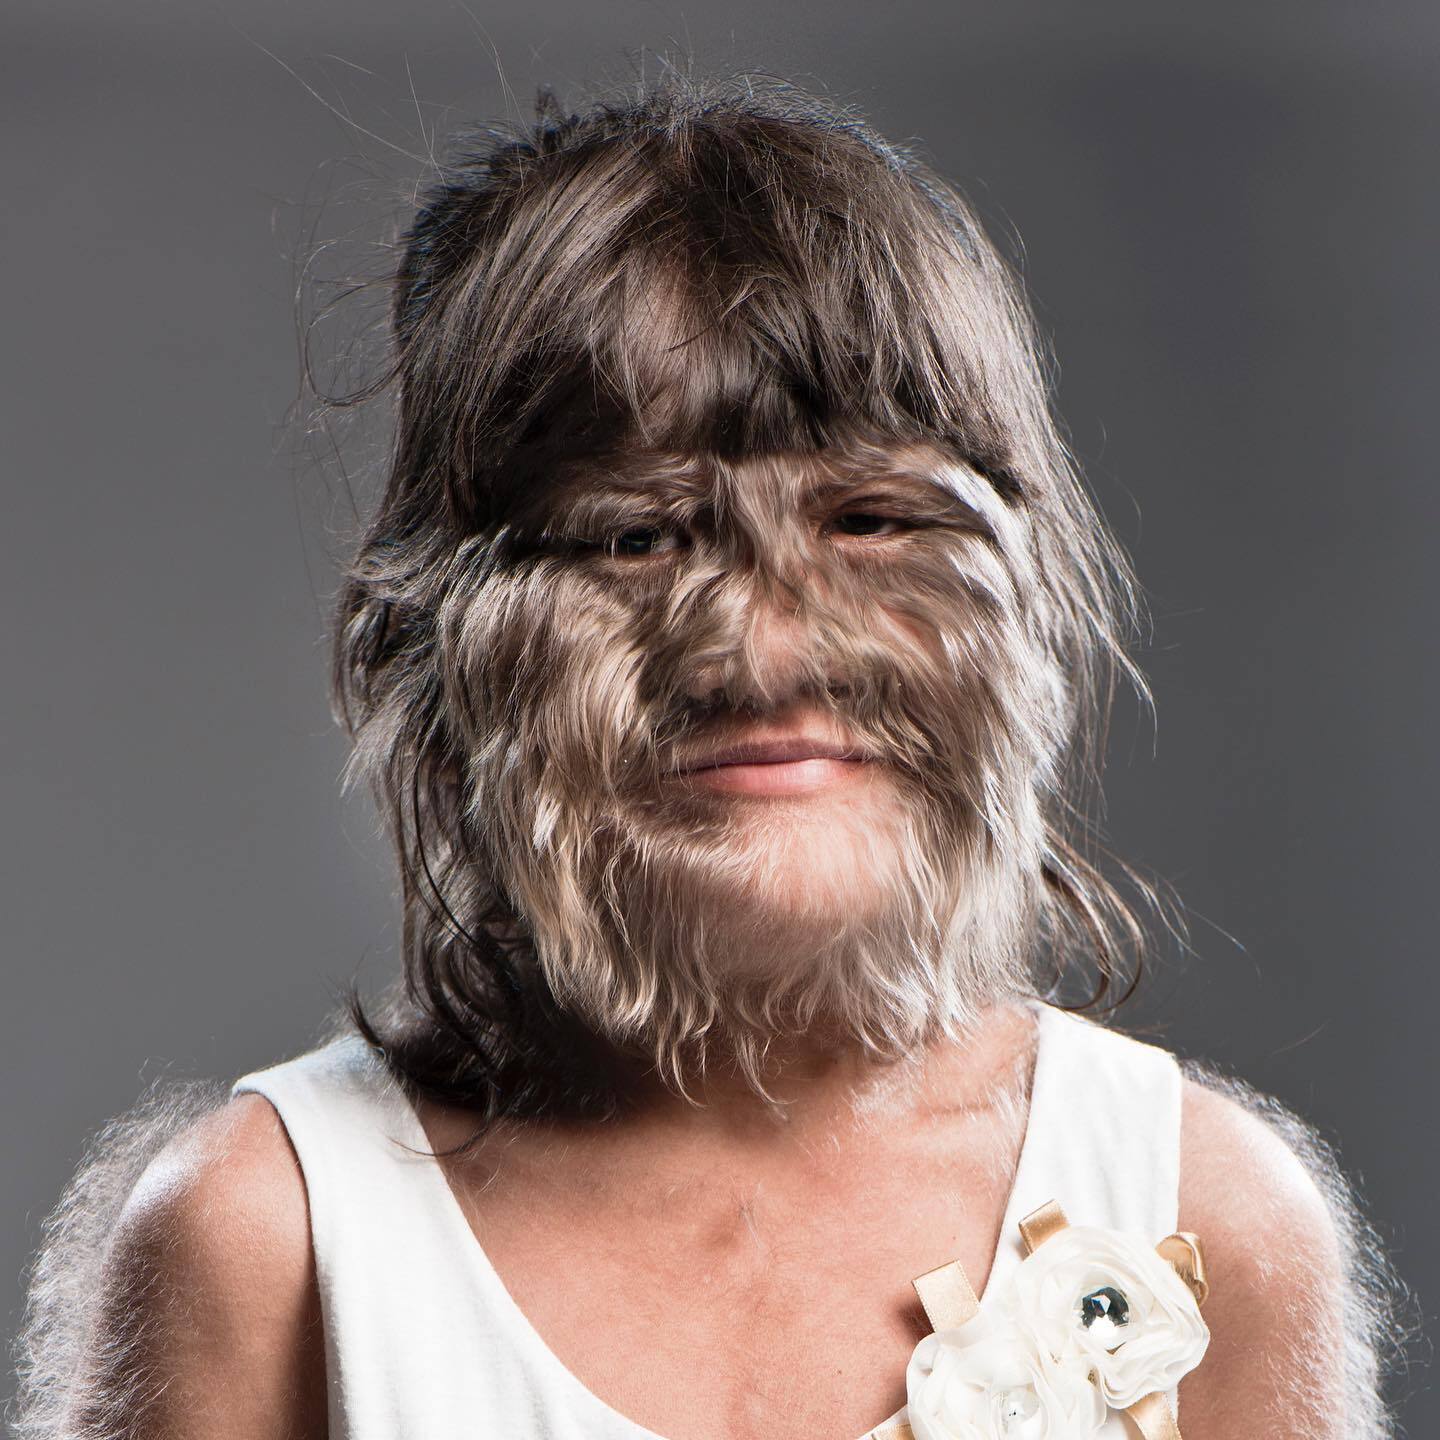 Який вигляд сьогодні має найволохатіша жінка світу з Книги рекордів Гіннеса: вийшла заміж і почала голитися